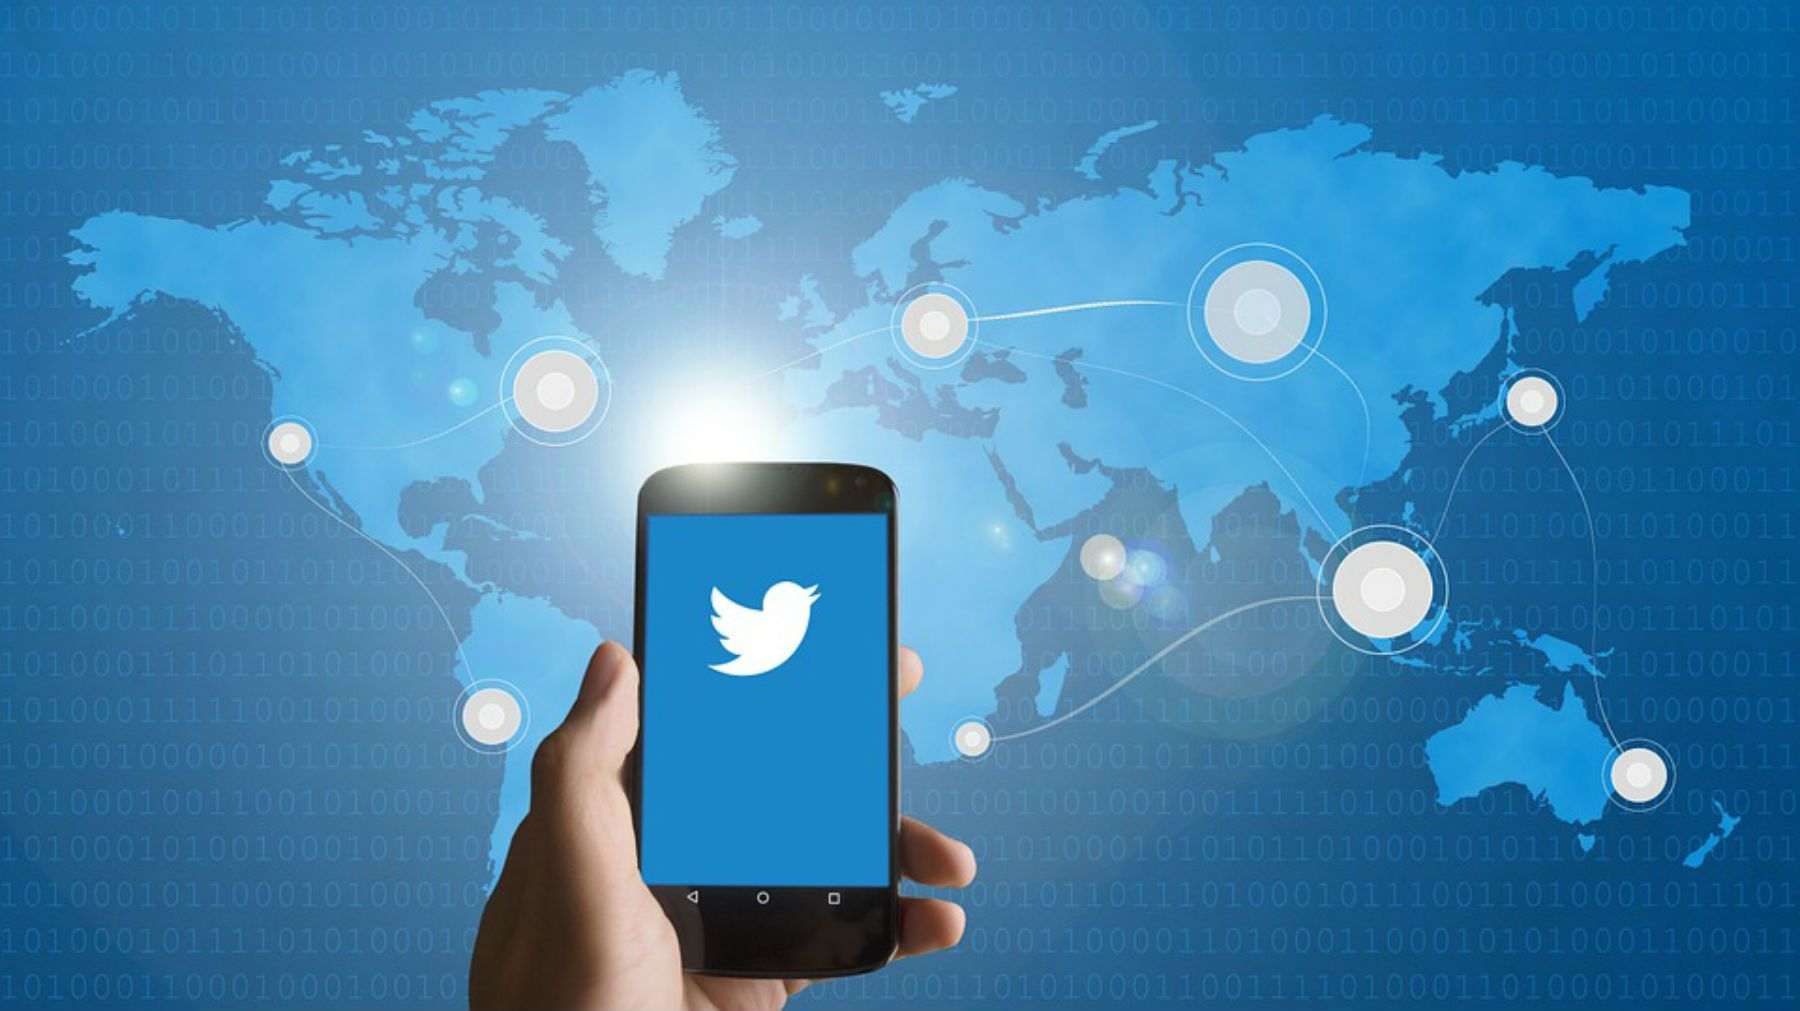 Twitter prohibeix contractar publicitat política arreu del món